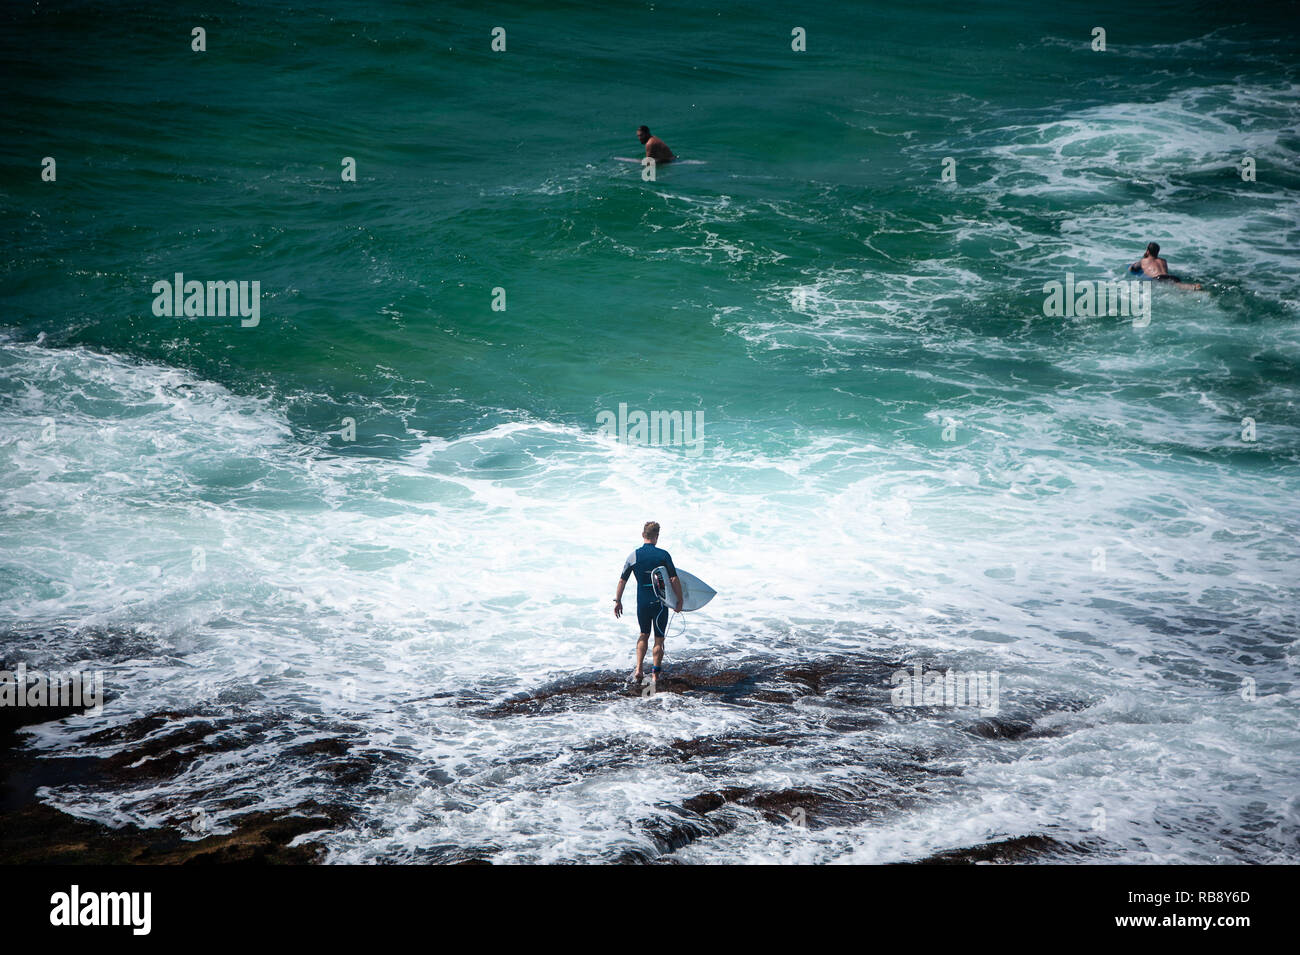 Vista aérea de un surfista llevar su tabla de surf en las olas. En traje de hombre camina en primer plano rocoso hacia un mar azul turquesa. Foto de stock